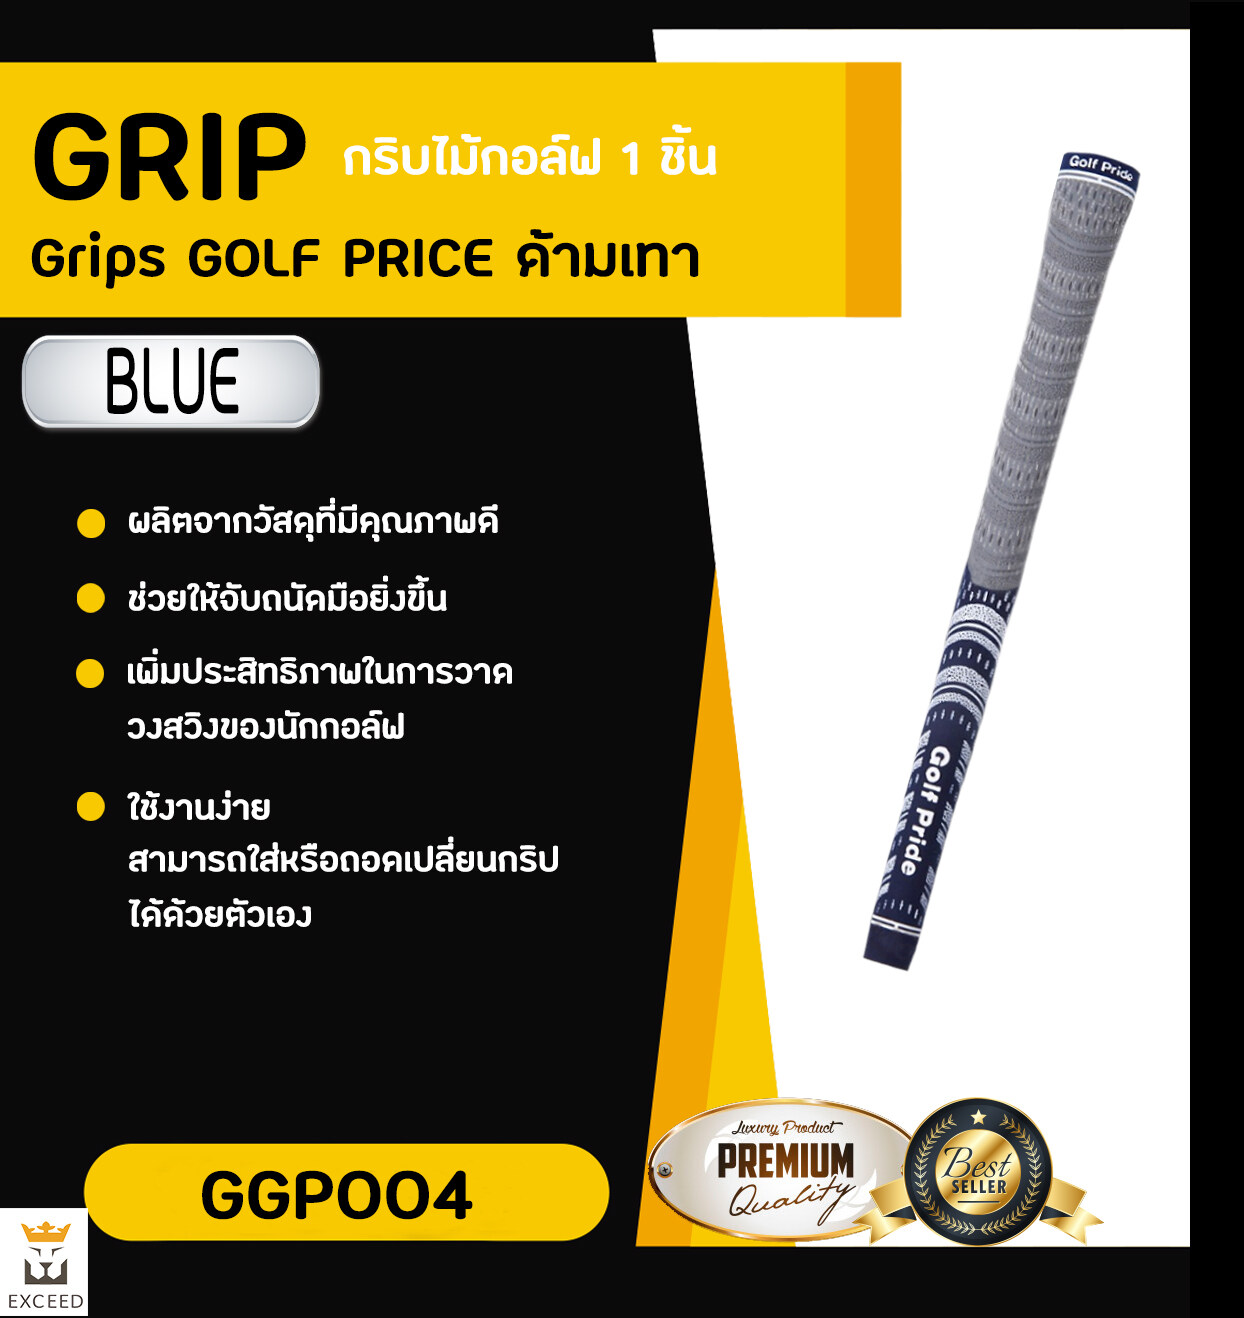 กริบไม้กอล์ฟ Golf Grip 1 ชิ้น Exceed ：ด้ามเทา มีหลากหลายสีให้เลือก ในราคาพิเศษ GGP004